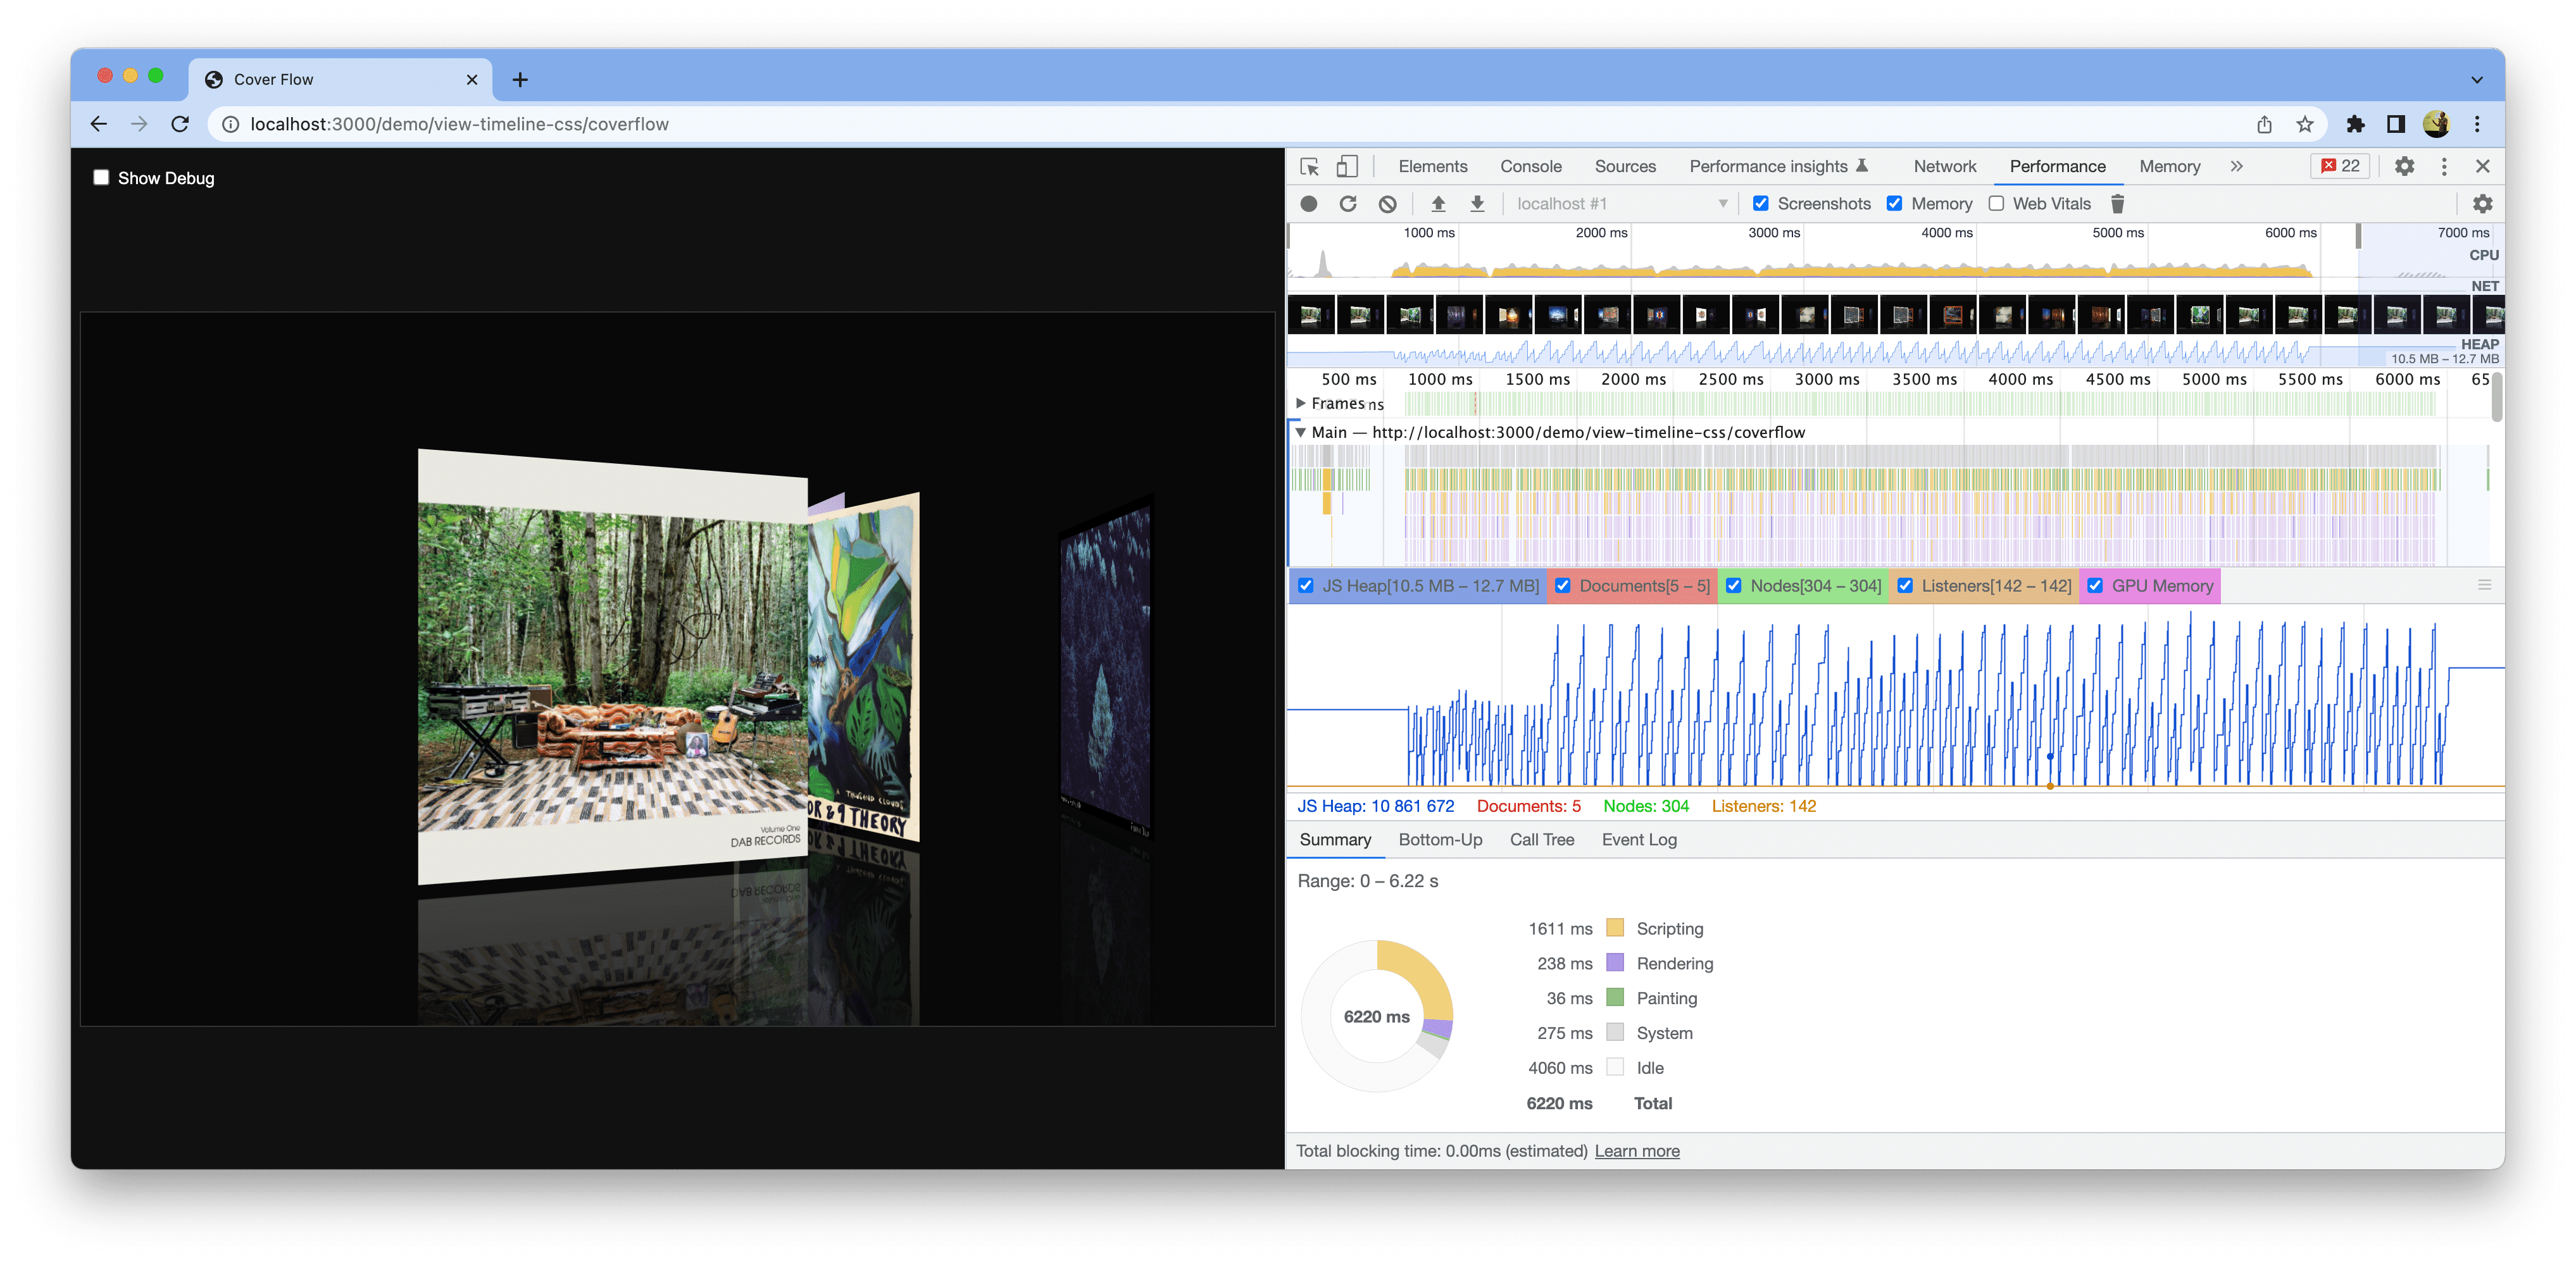 在 Chrome 中打开的演示的屏幕截图。开发者工具处于打开状态，显示经过改进的性能衡量功能。